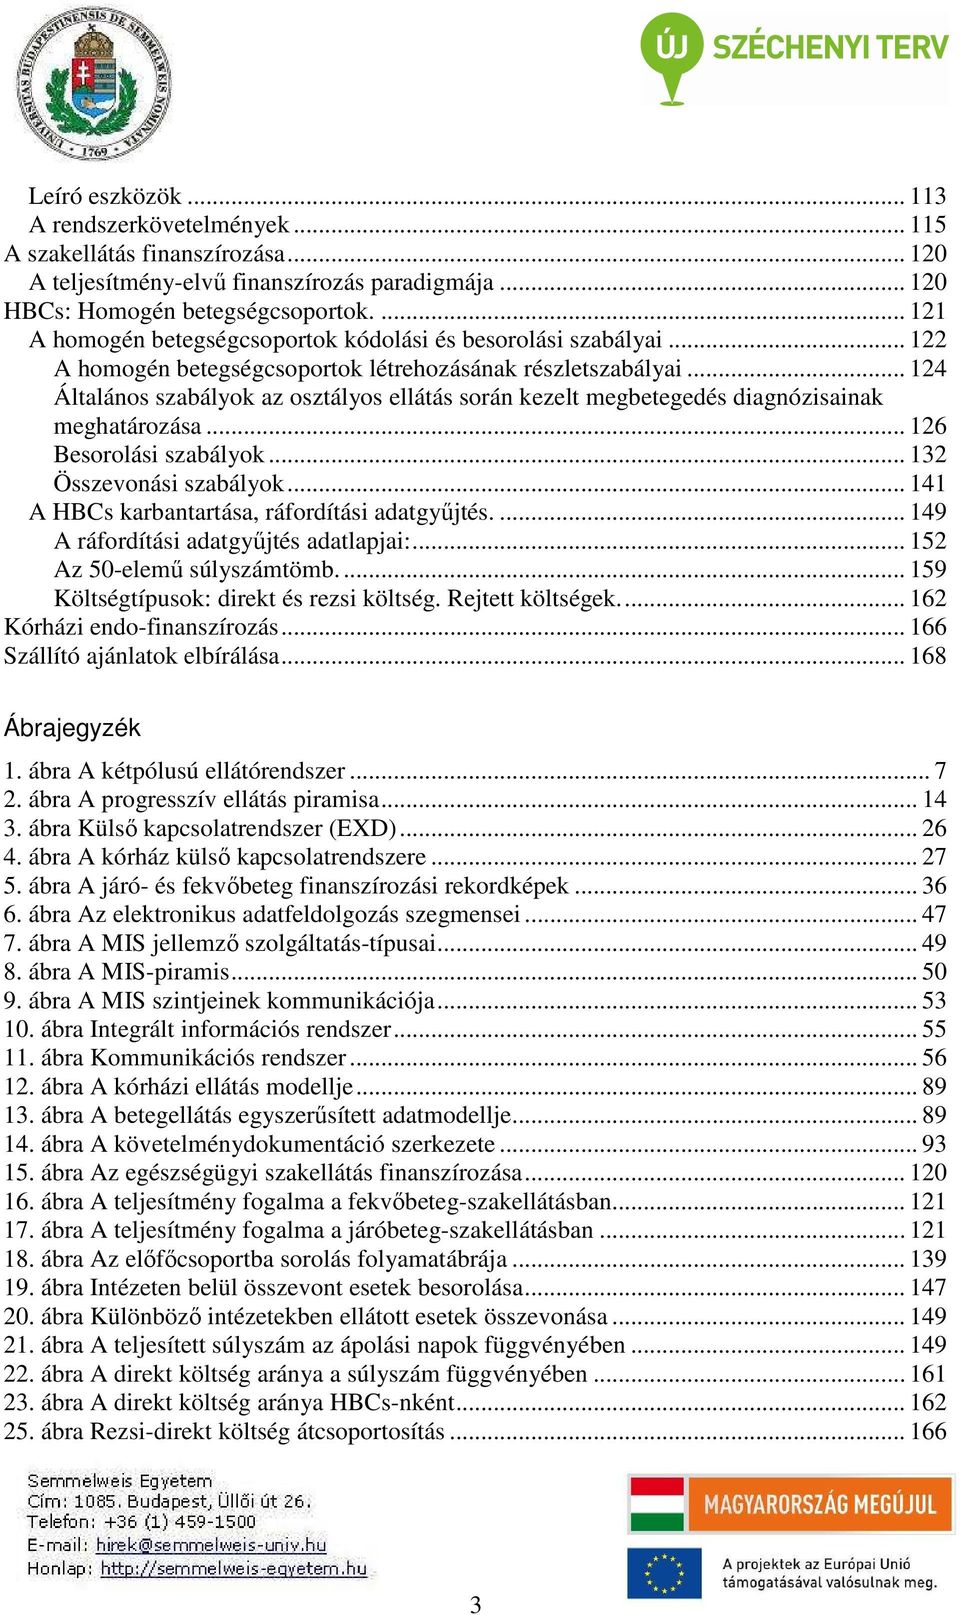 Kórházi információs rendszerek e-book Dr. Daragó László - PDF Free Download